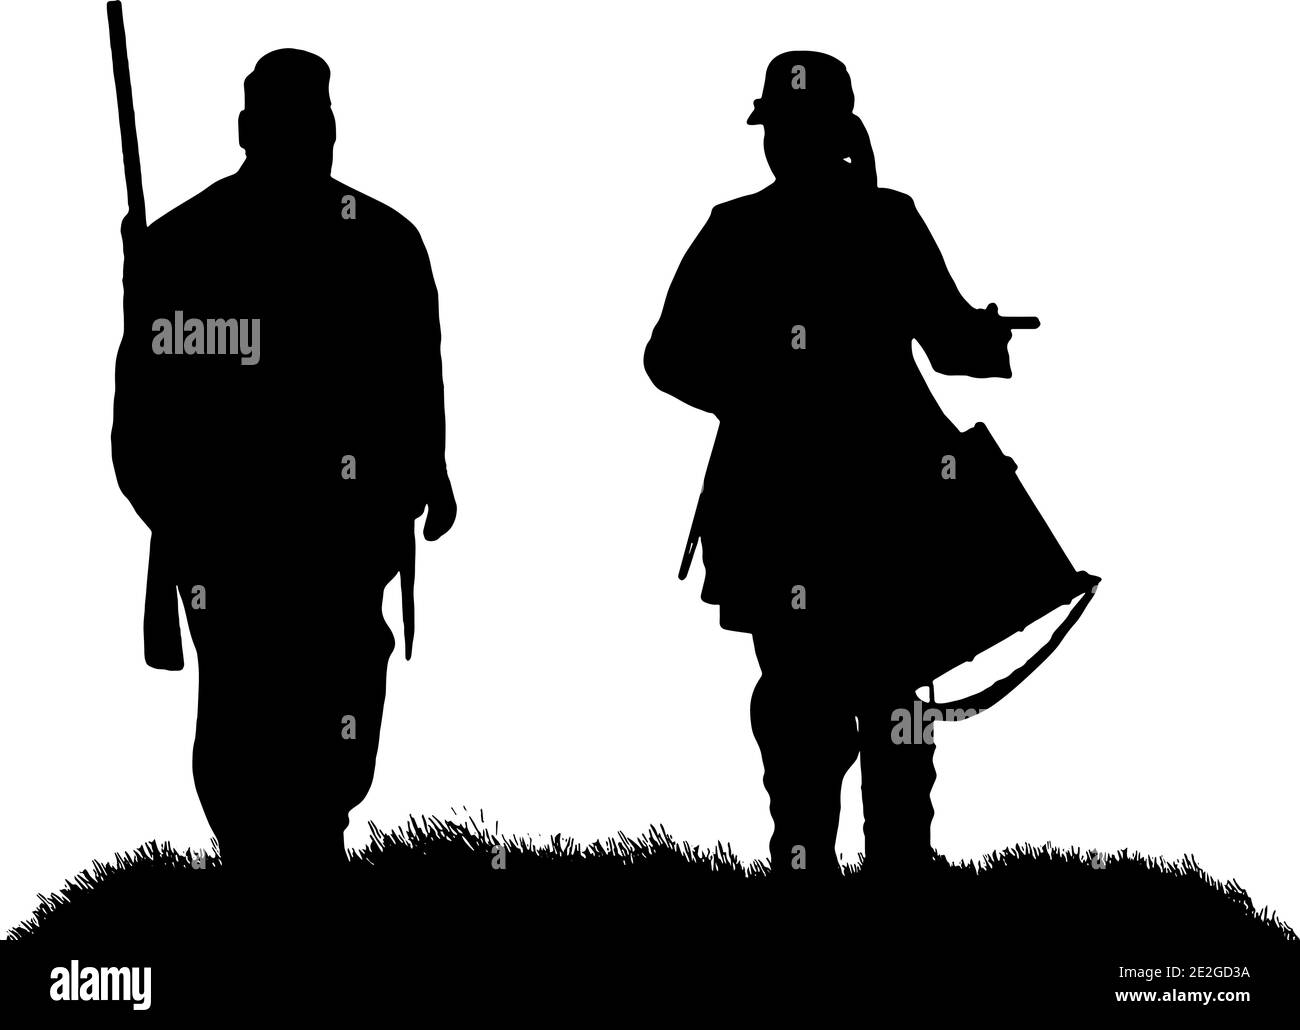 Amerikanische Bürgerkrieg Soldat und Schlagzeuger Junge Silhouette in schwarz auf weißem Hintergrund, Vektor-Grafik Stock Vektor